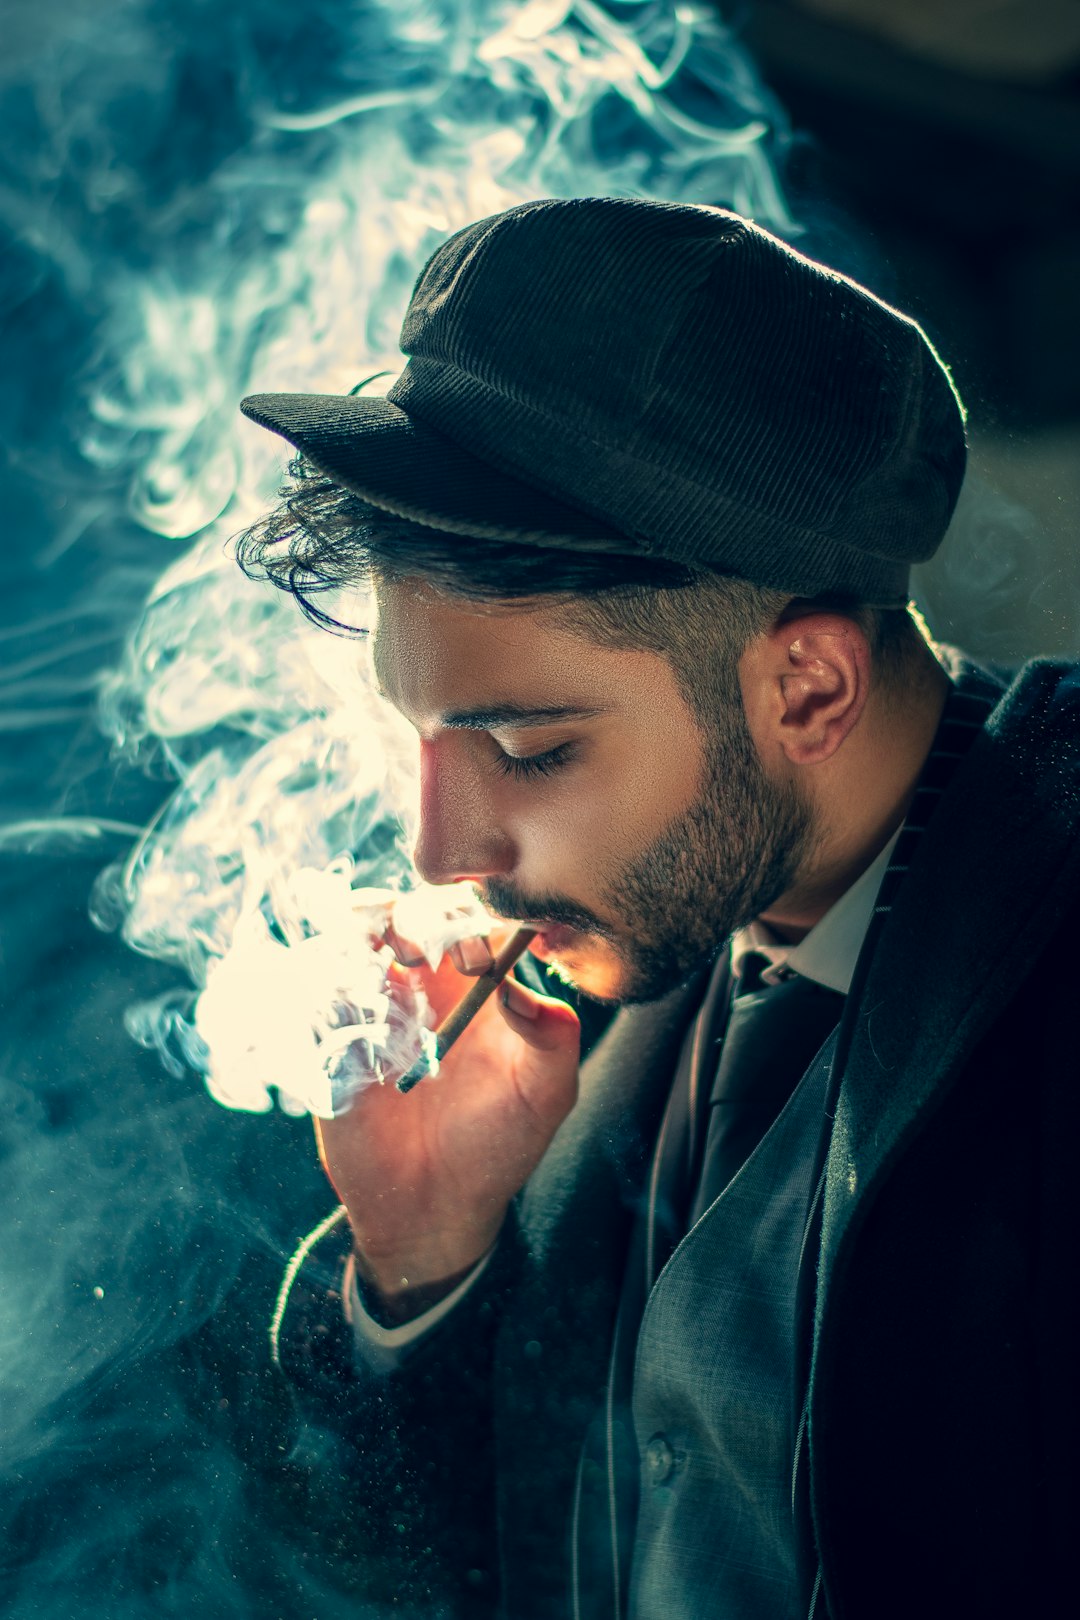 man smoking cigarette wearing black hat